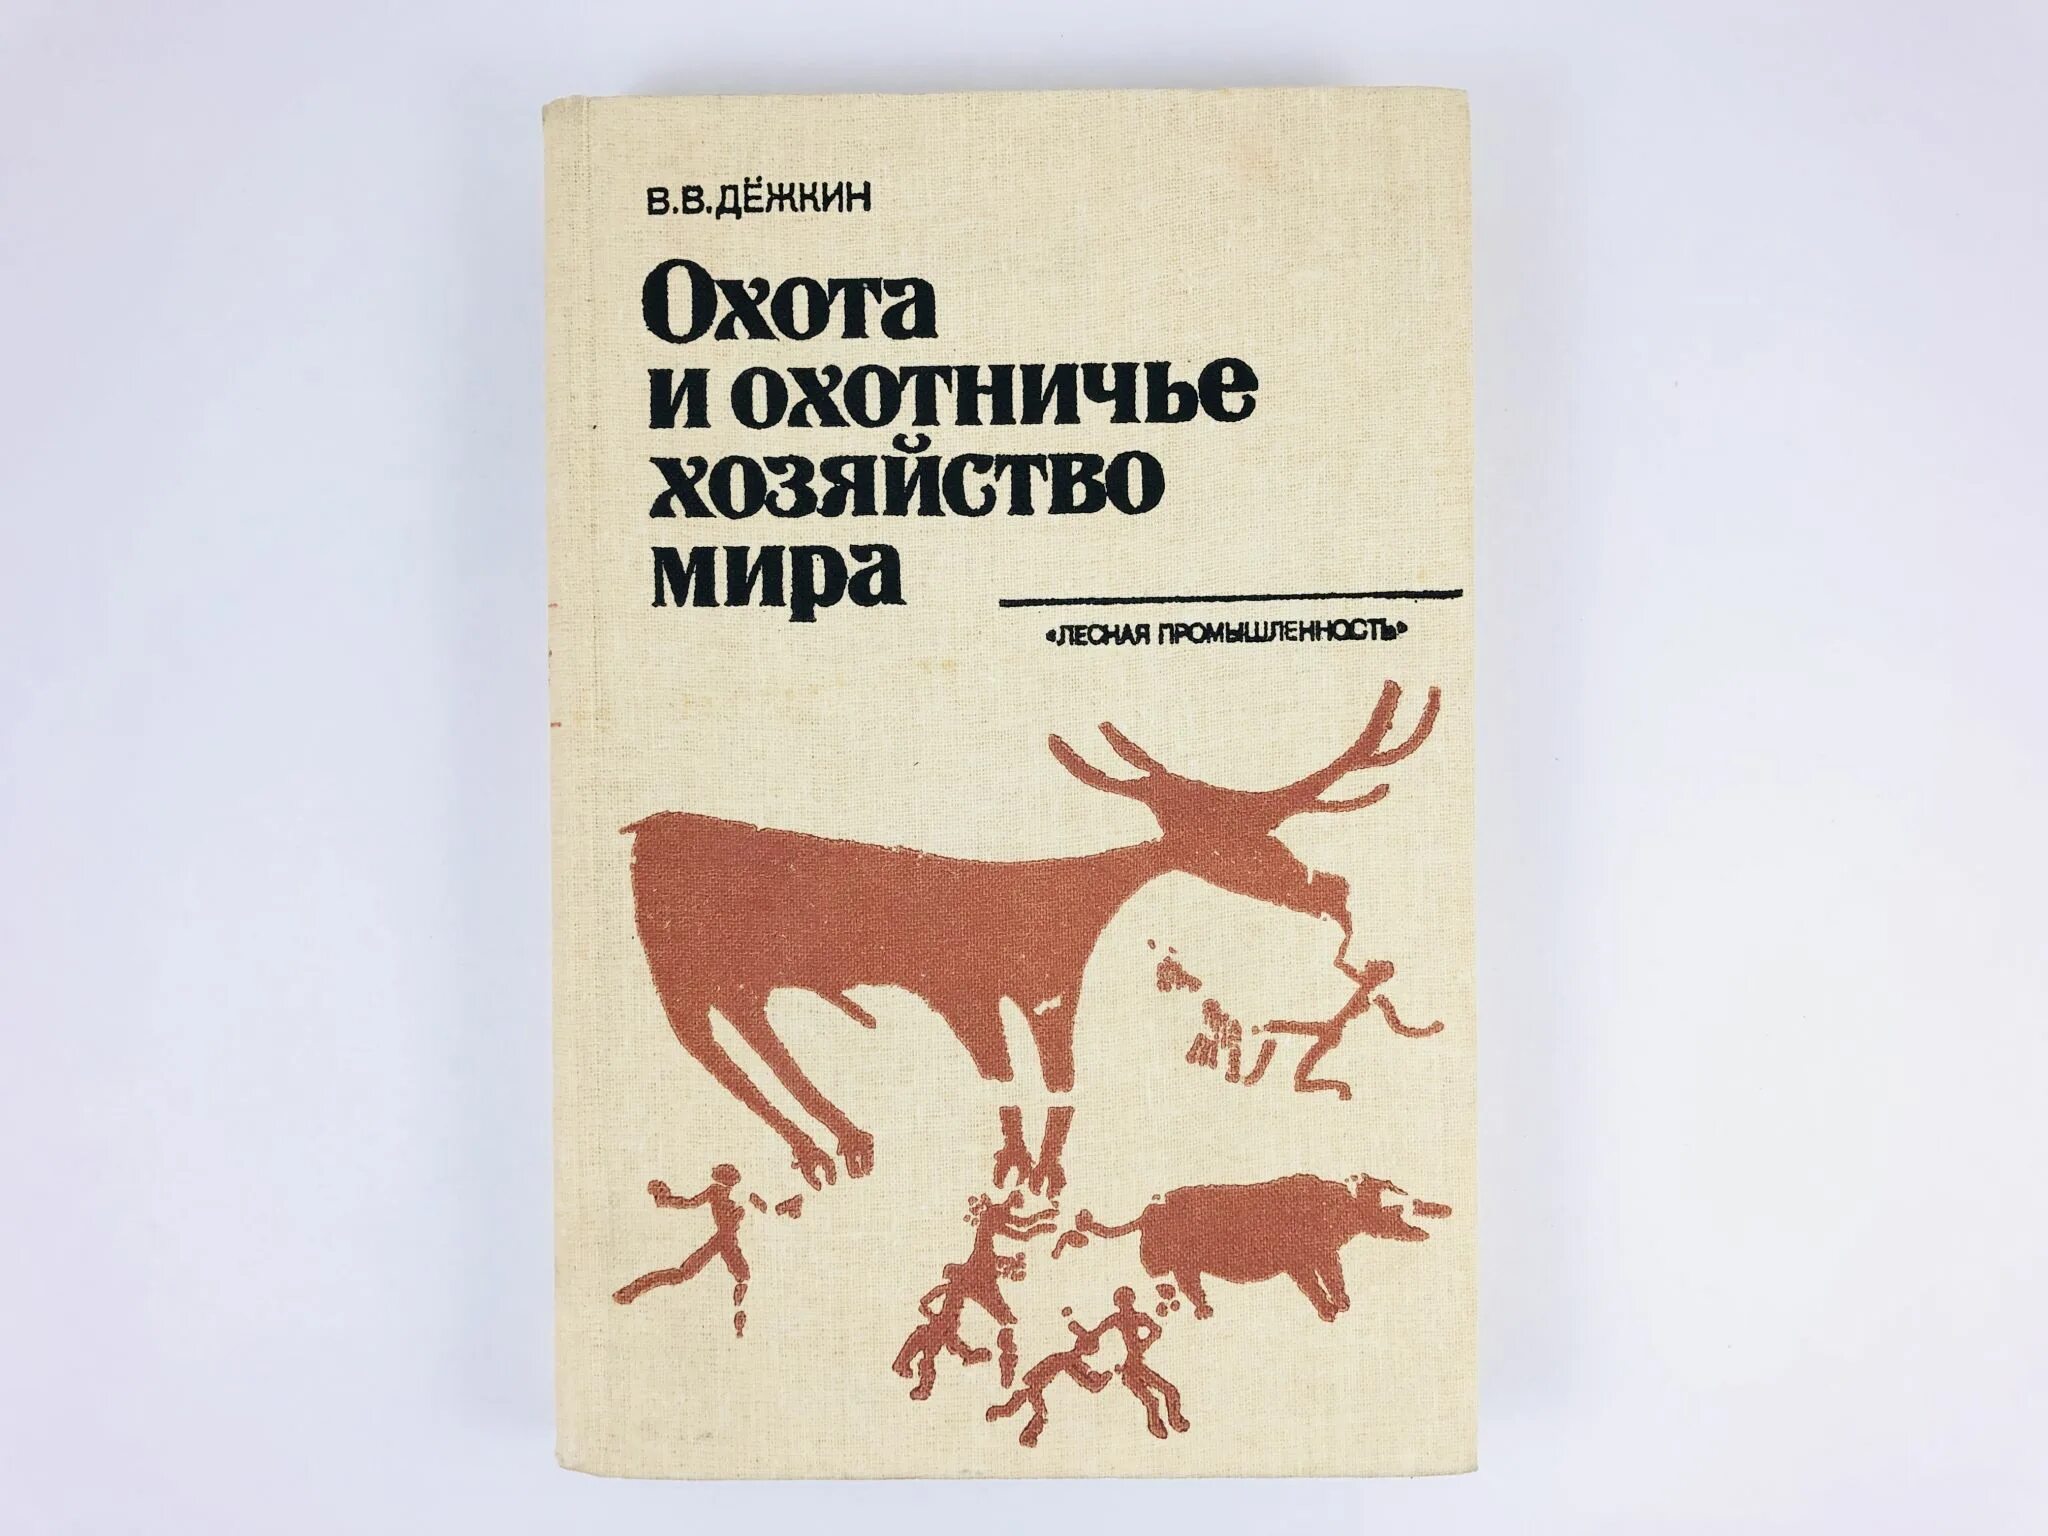 Читать про охоту. Книги об охоте. Охотничье хозяйство книги. Книга охота и рыбалка. Охота и охотничье хозяйство.